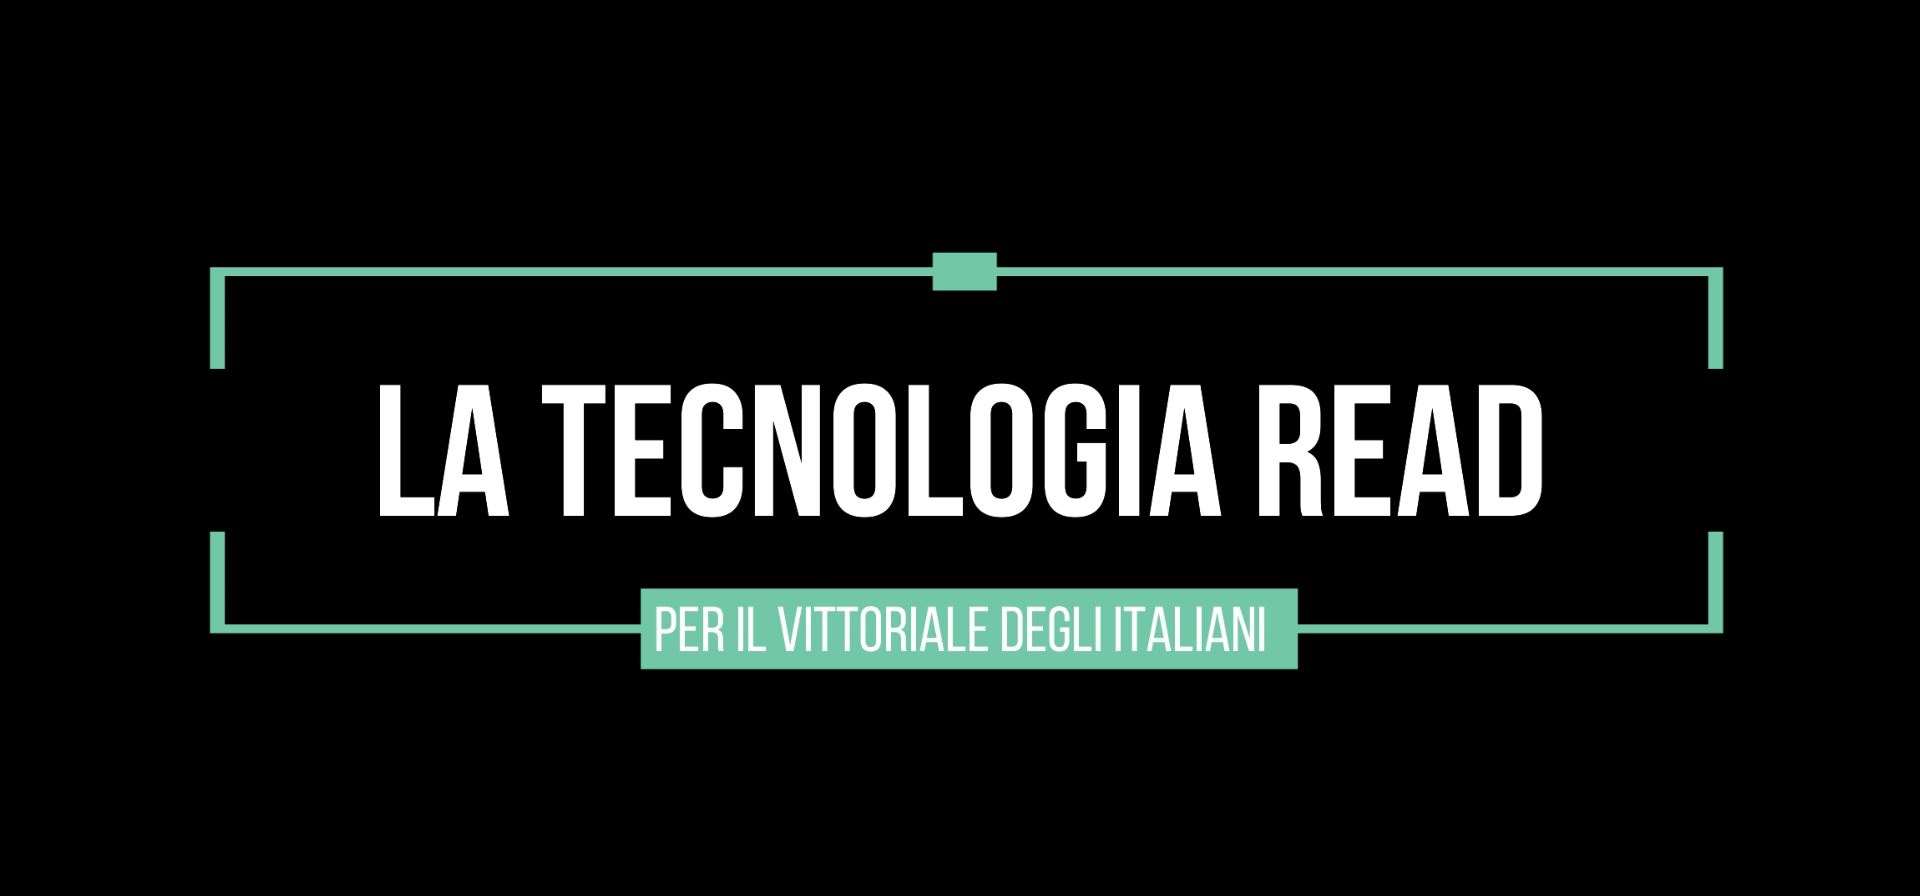 La tecnologia READ per il Vittoriale degli Italiani!